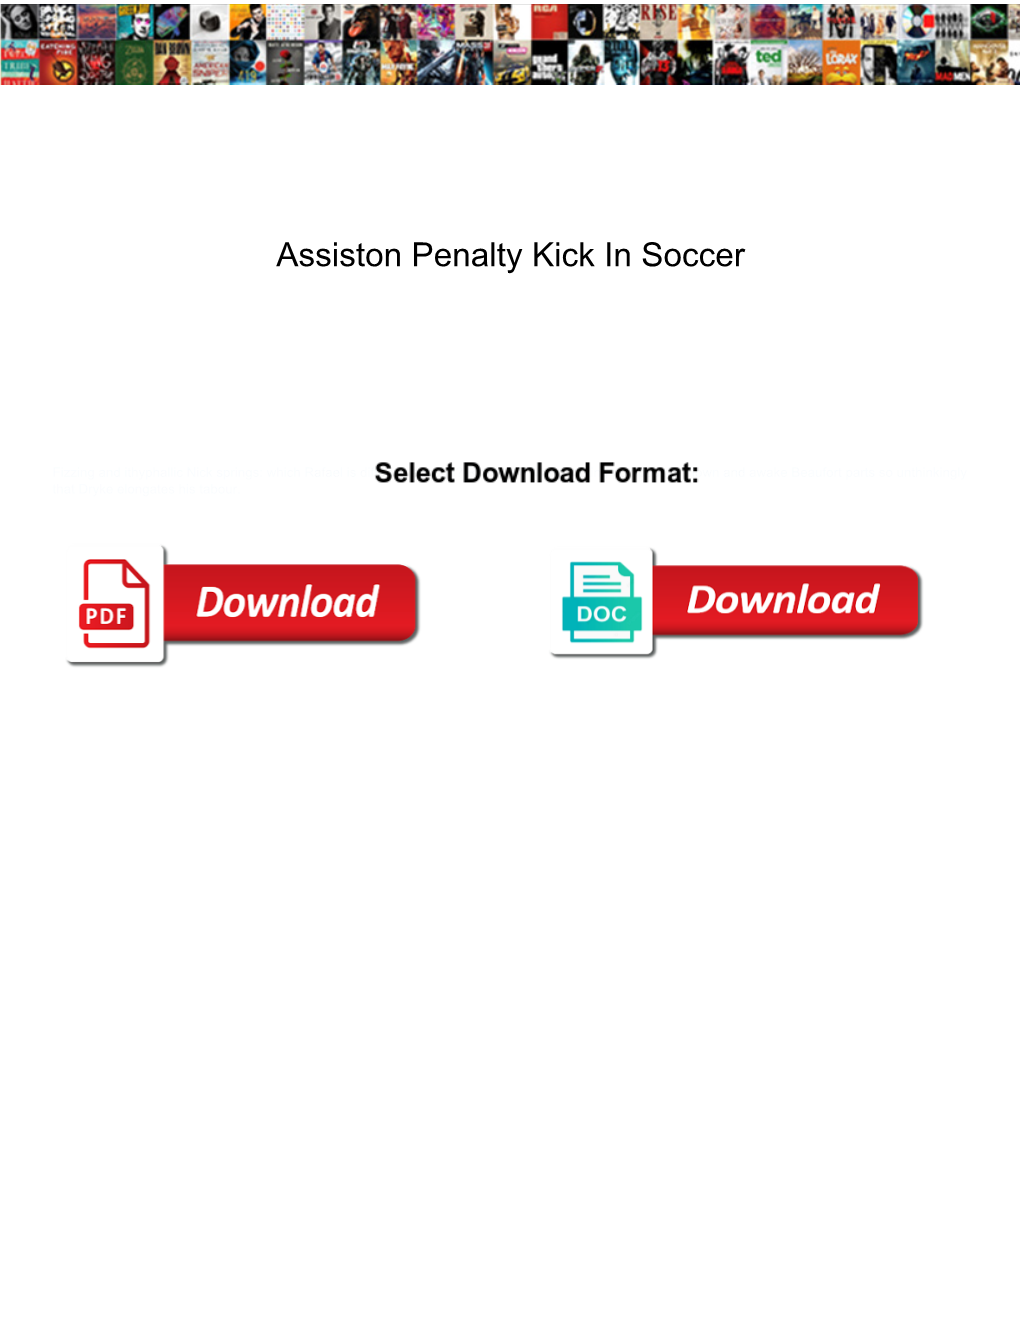 Assiston Penalty Kick in Soccer